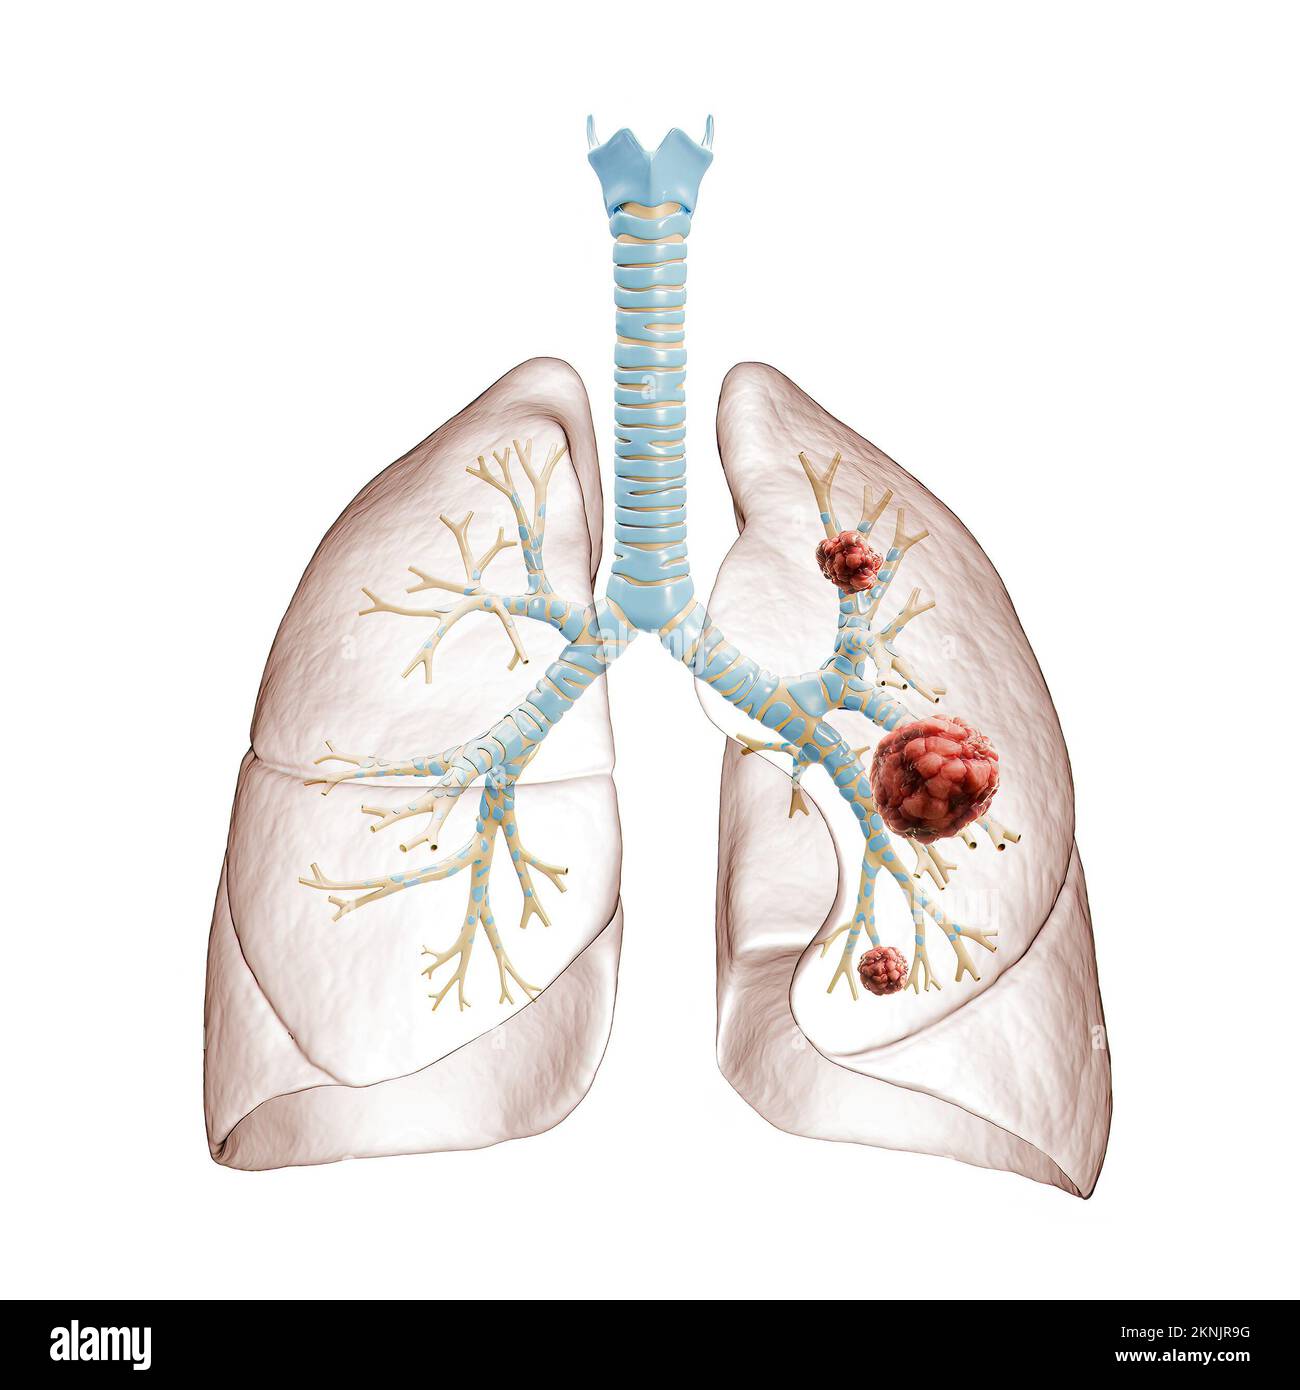 Cellules pulmonaires Banque d'images détourées - Alamy